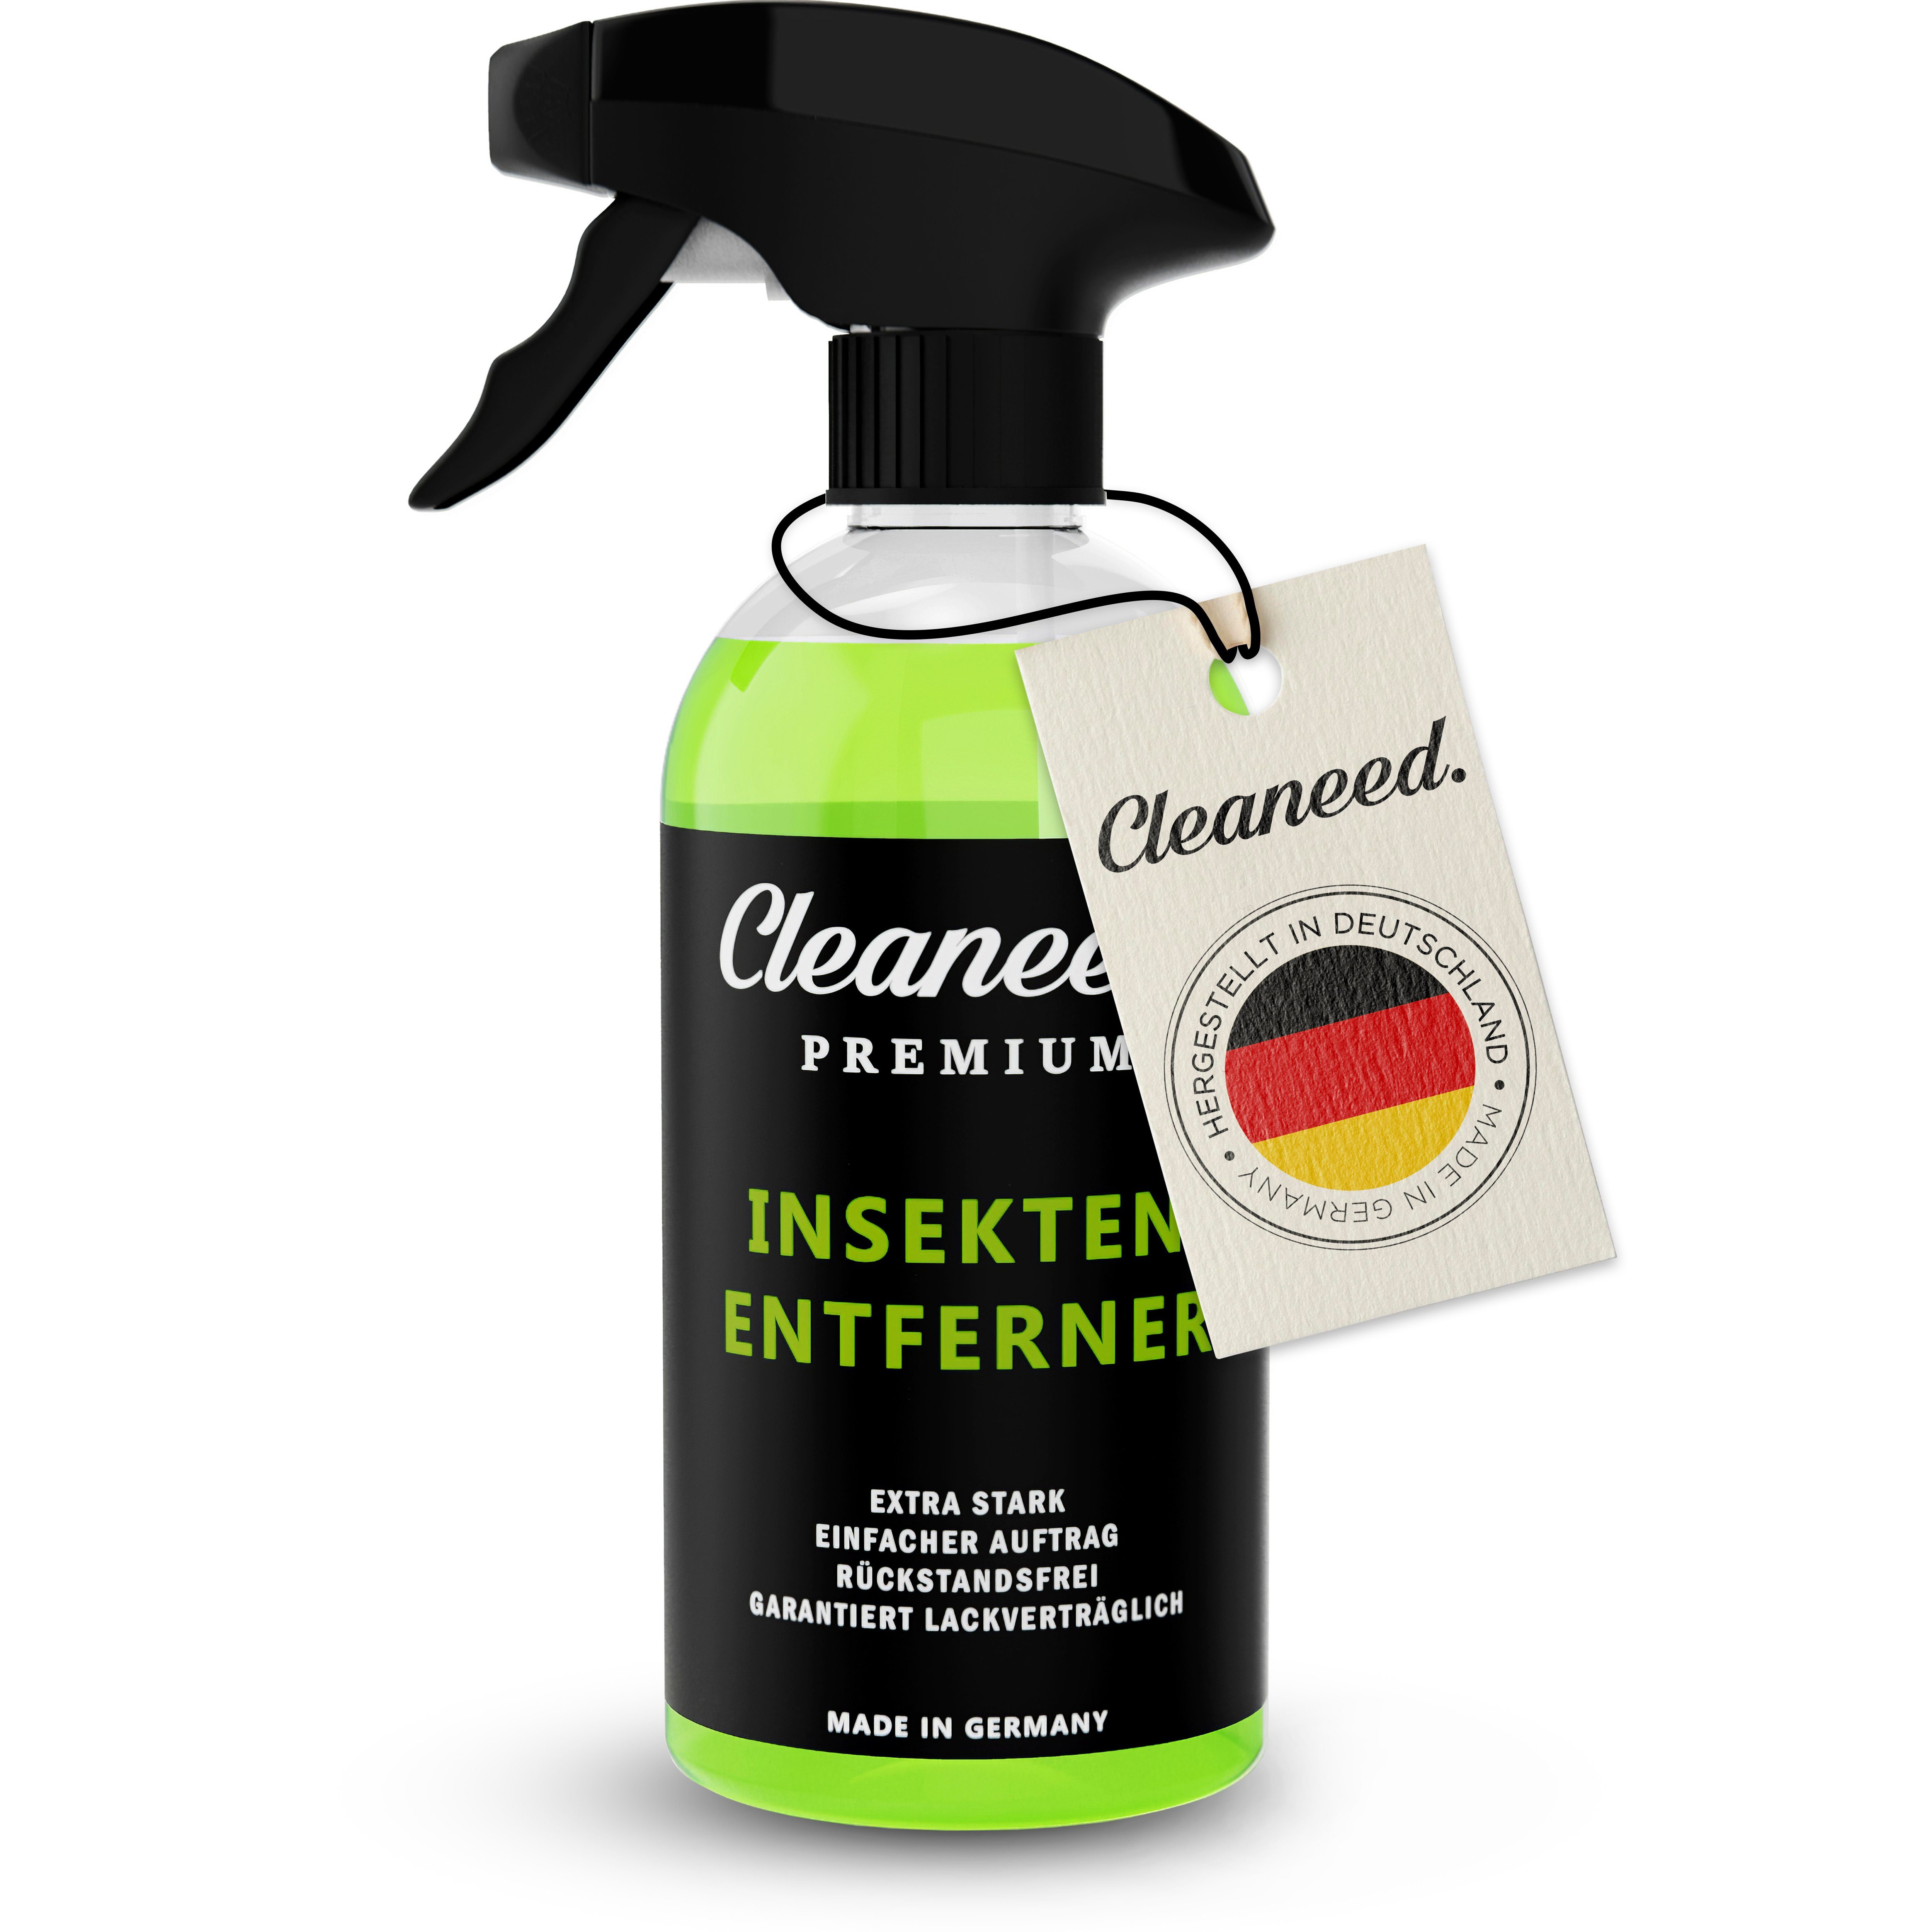 Cleaneed Insektenentferner – Made in Germany – Extra stark, Rückstandsfrei Insektenentferner (Rückstandsfrei, Einfache Anwendung, Made in Germany)